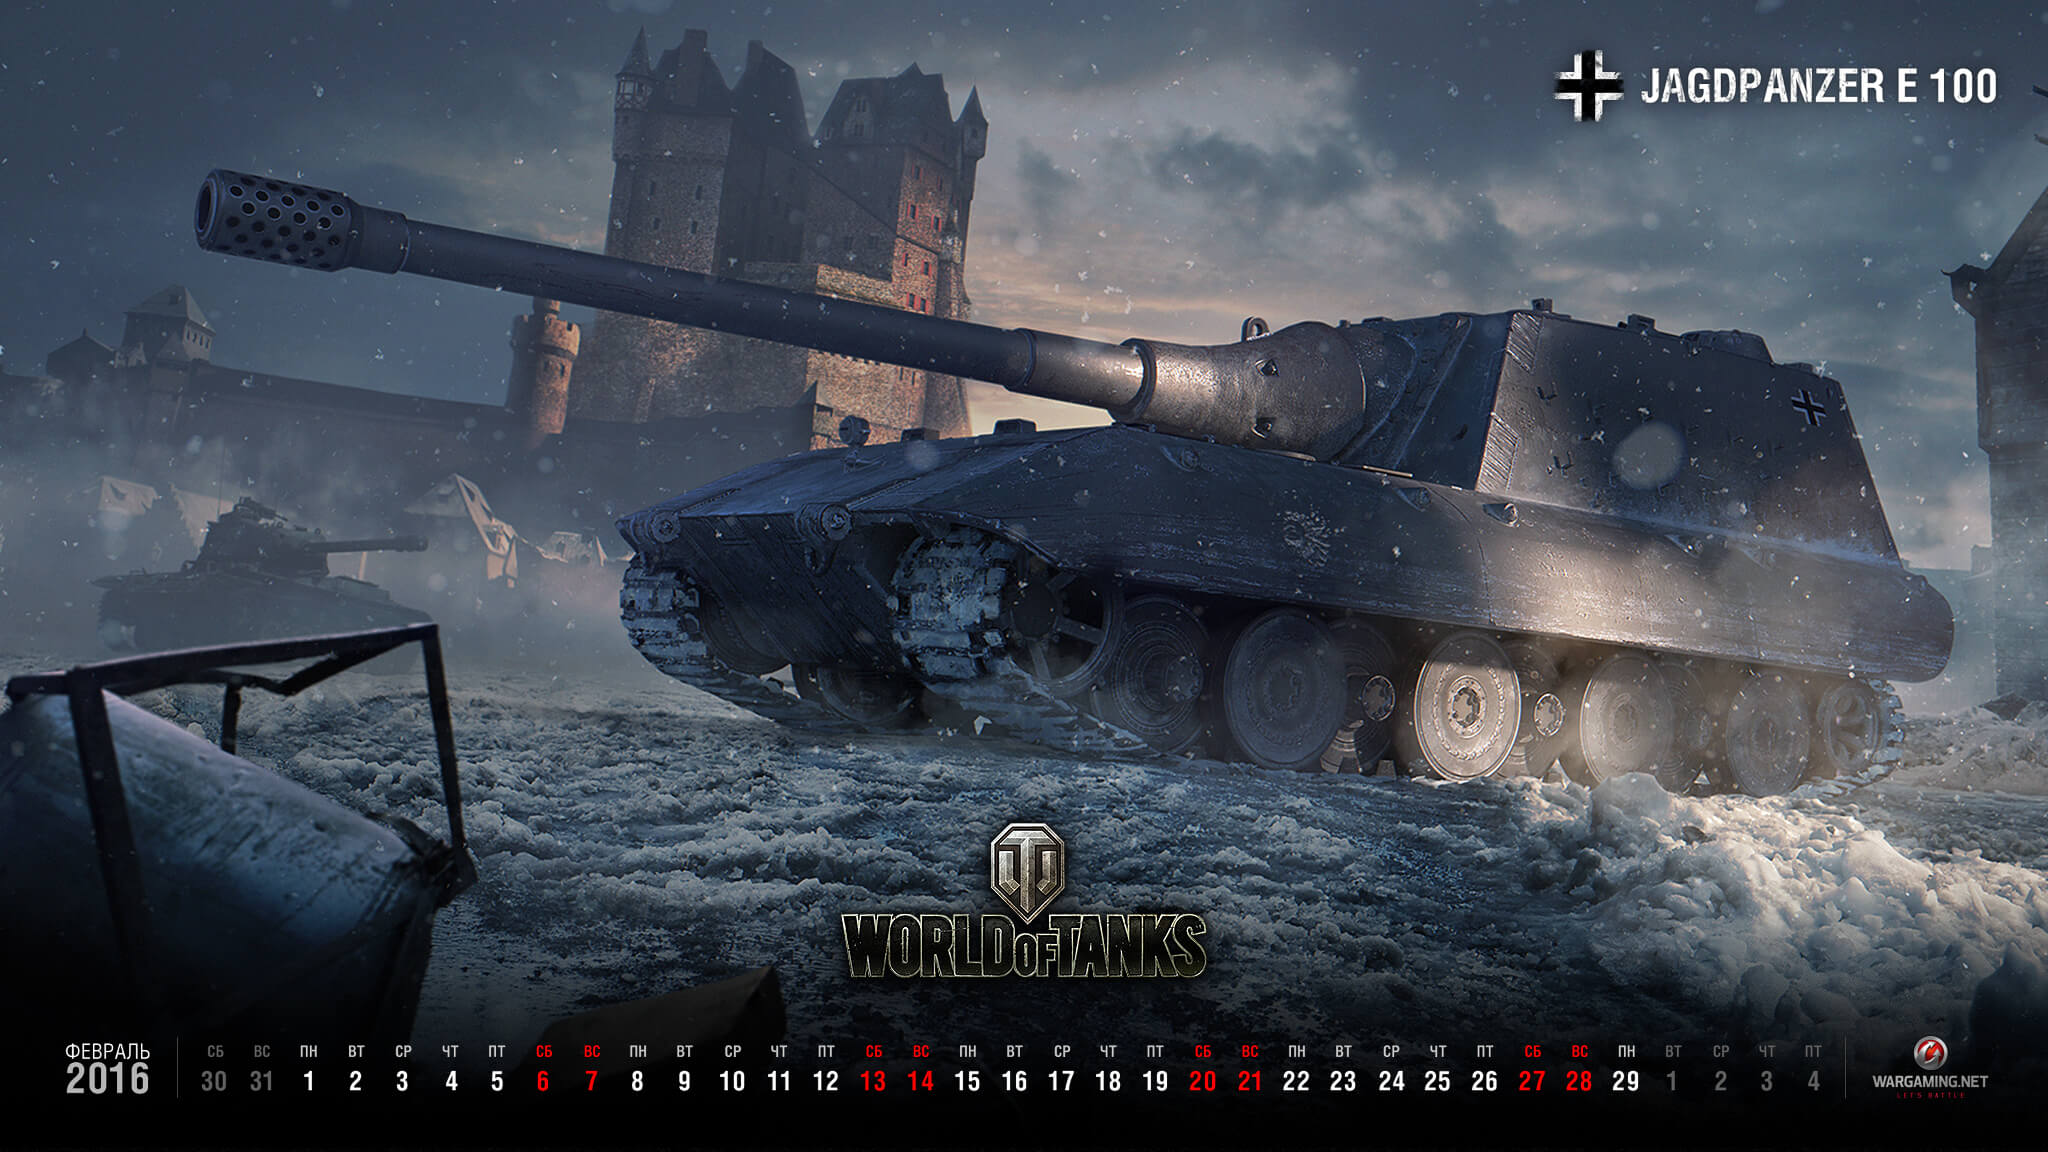 Обои и календарь на февраль 2016 года | Архив | «Мир танков»